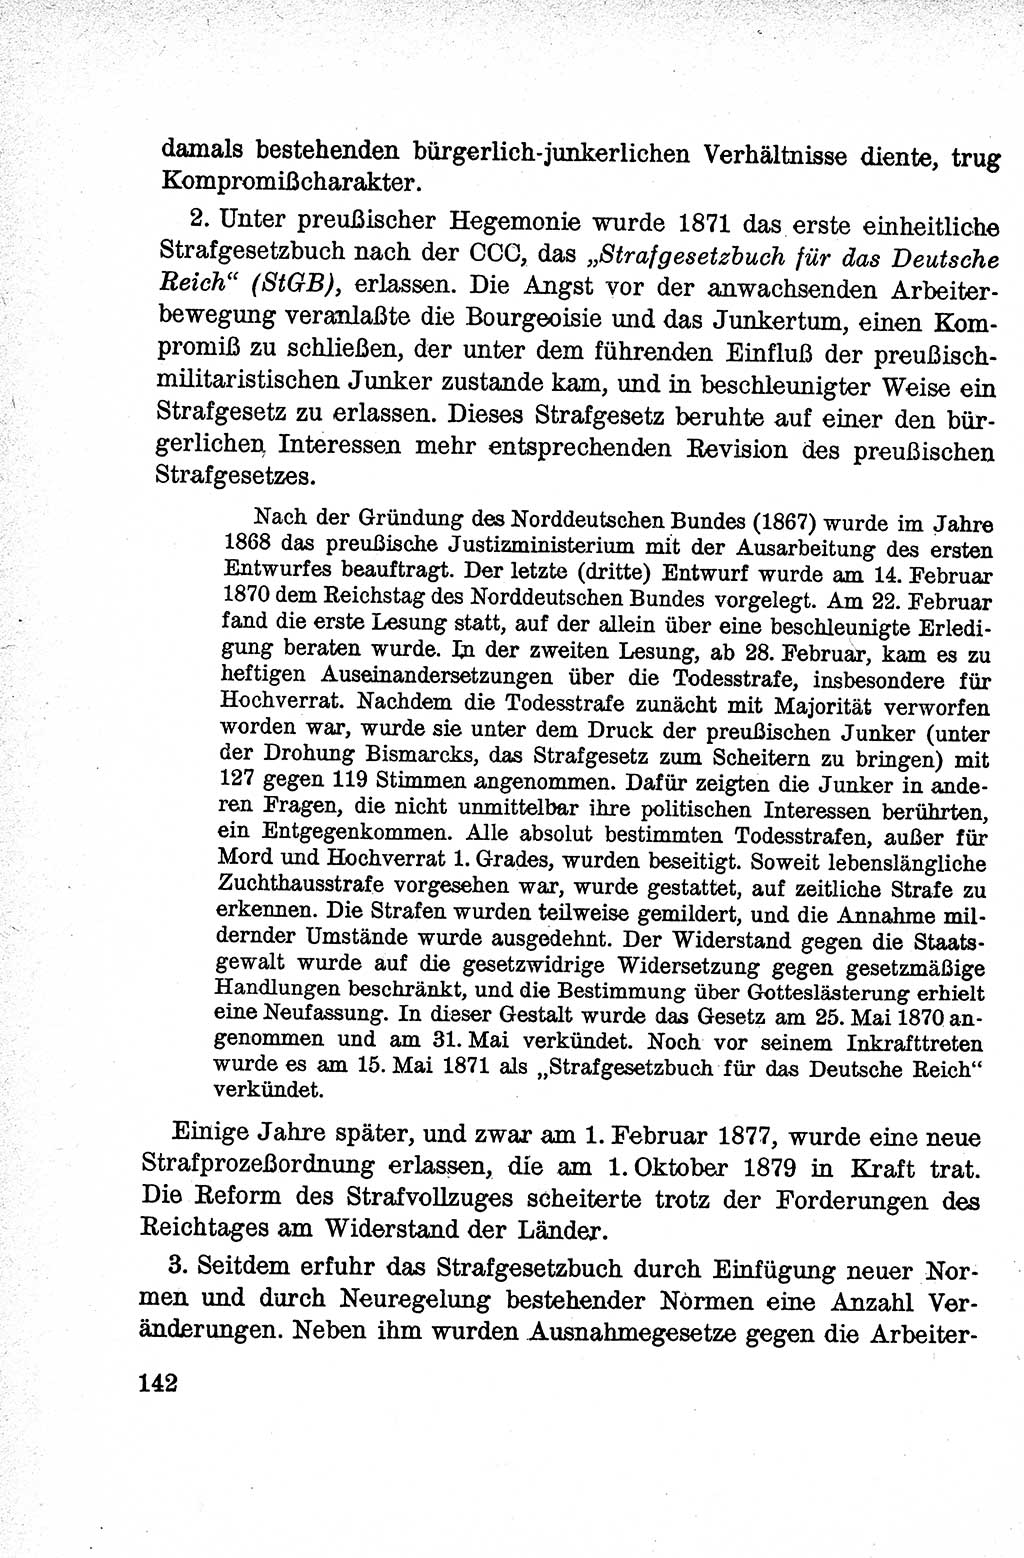 Lehrbuch des Strafrechts der Deutschen Demokratischen Republik (DDR), Allgemeiner Teil 1959, Seite 142 (Lb. Strafr. DDR AT 1959, S. 142)